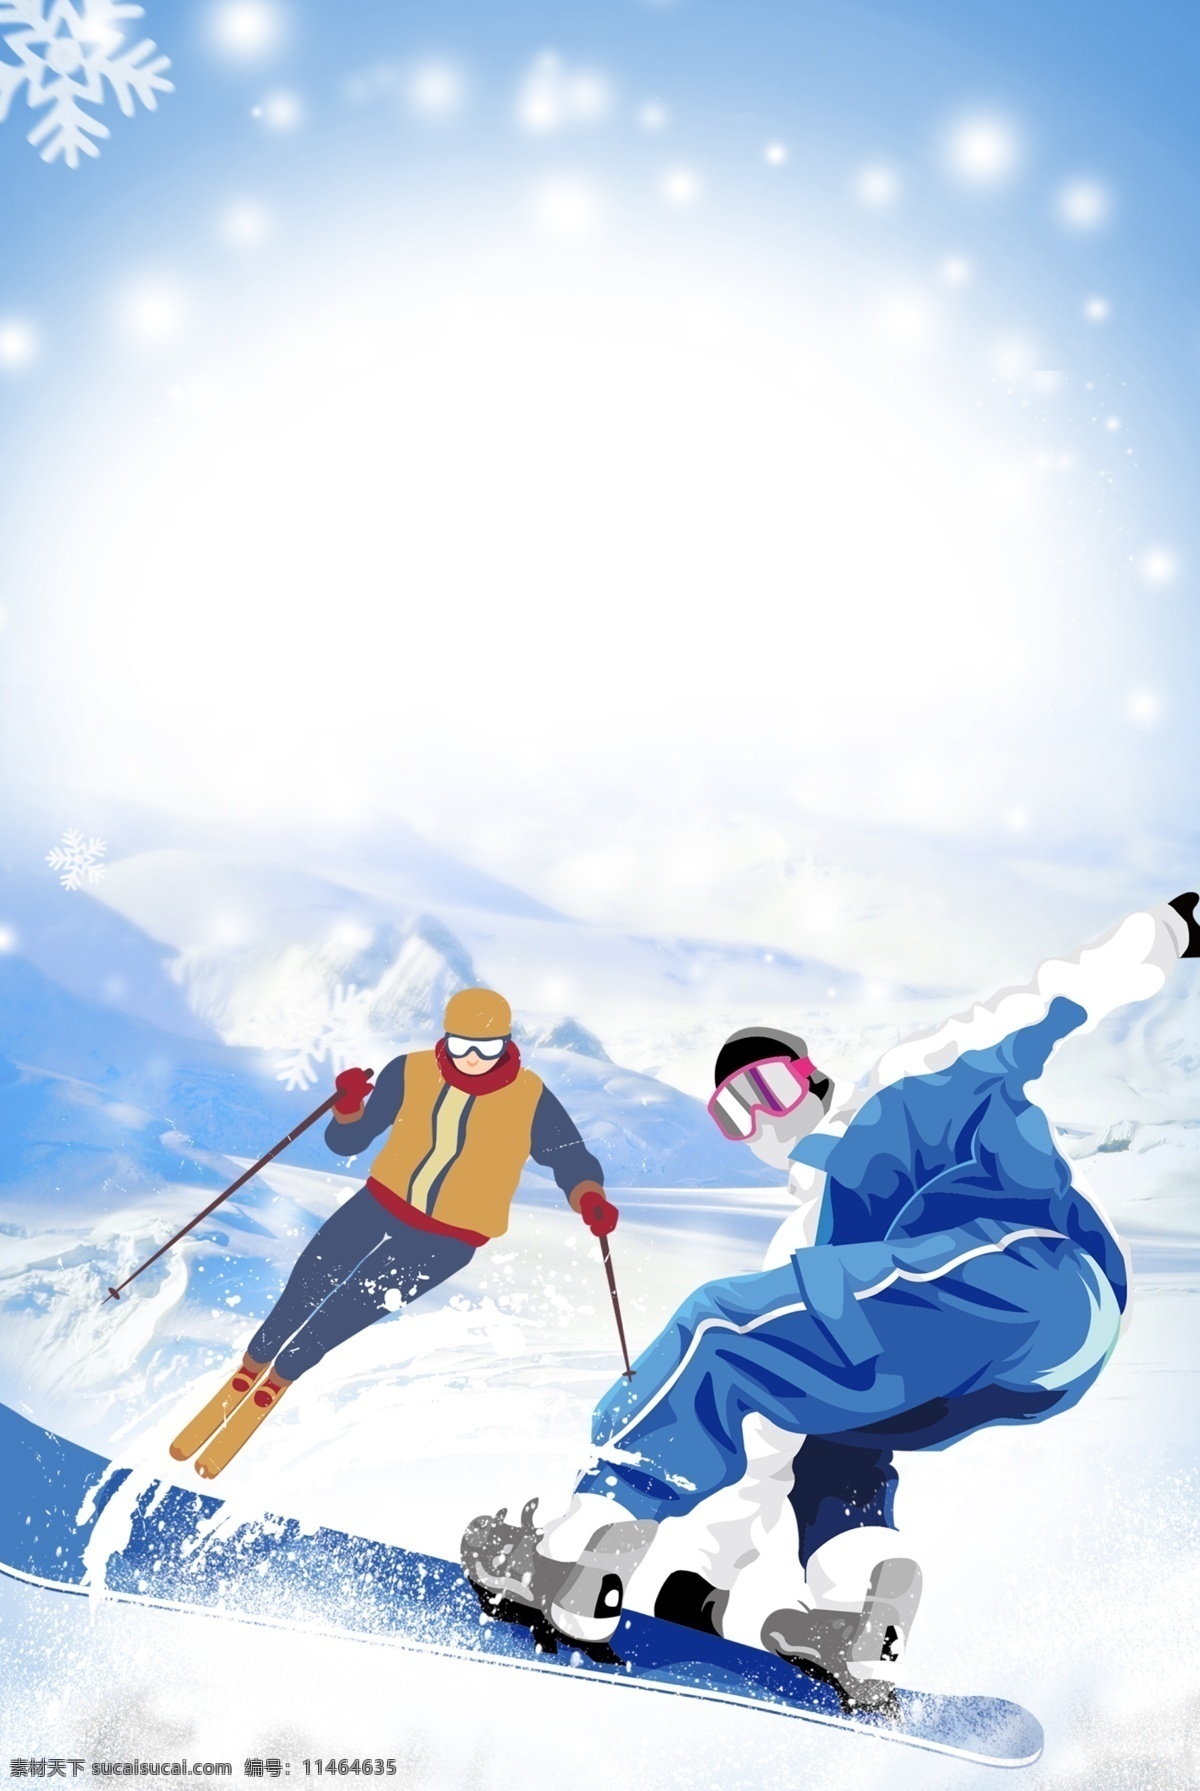 冬日 里 激情 滑雪 人物 背景 唯美 雪山 冬天 海报背景 雪花 冬季滑雪 滑雪场 滑雪背景 滑雪活动场 激情滑雪 背景设计 滑雪比赛 滑雪展板 滑雪素材